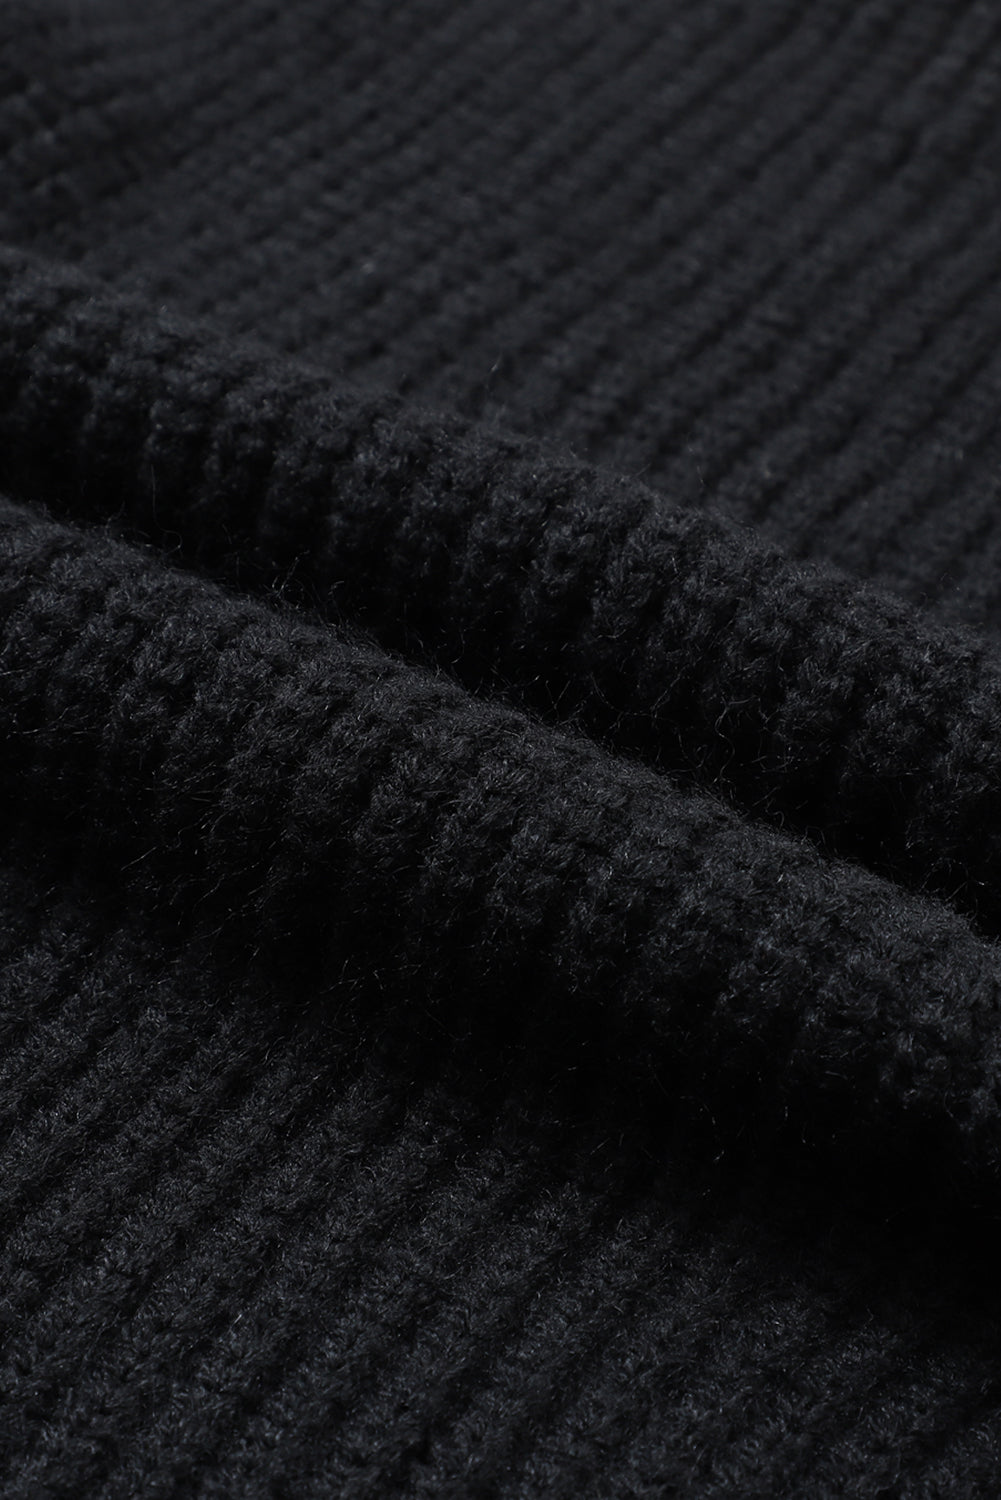 Cardigan maglione oversize nero con maniche ripiegabili